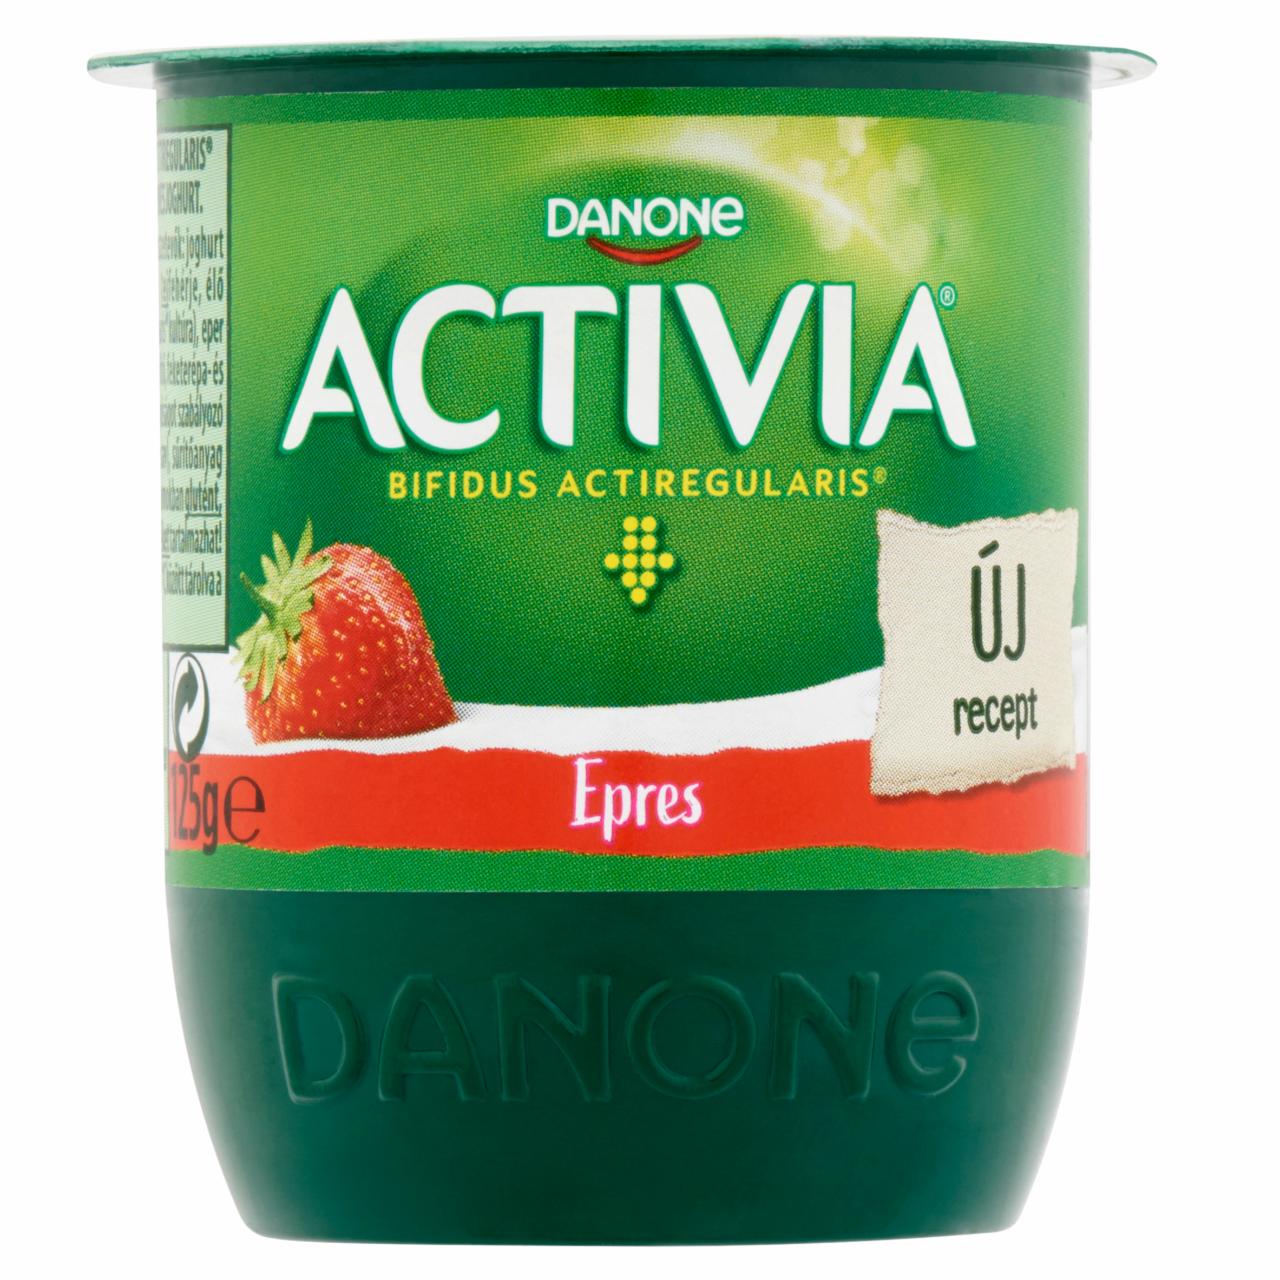 Képek - Activia élőflórás, zsírszegény epres joghurt Danone